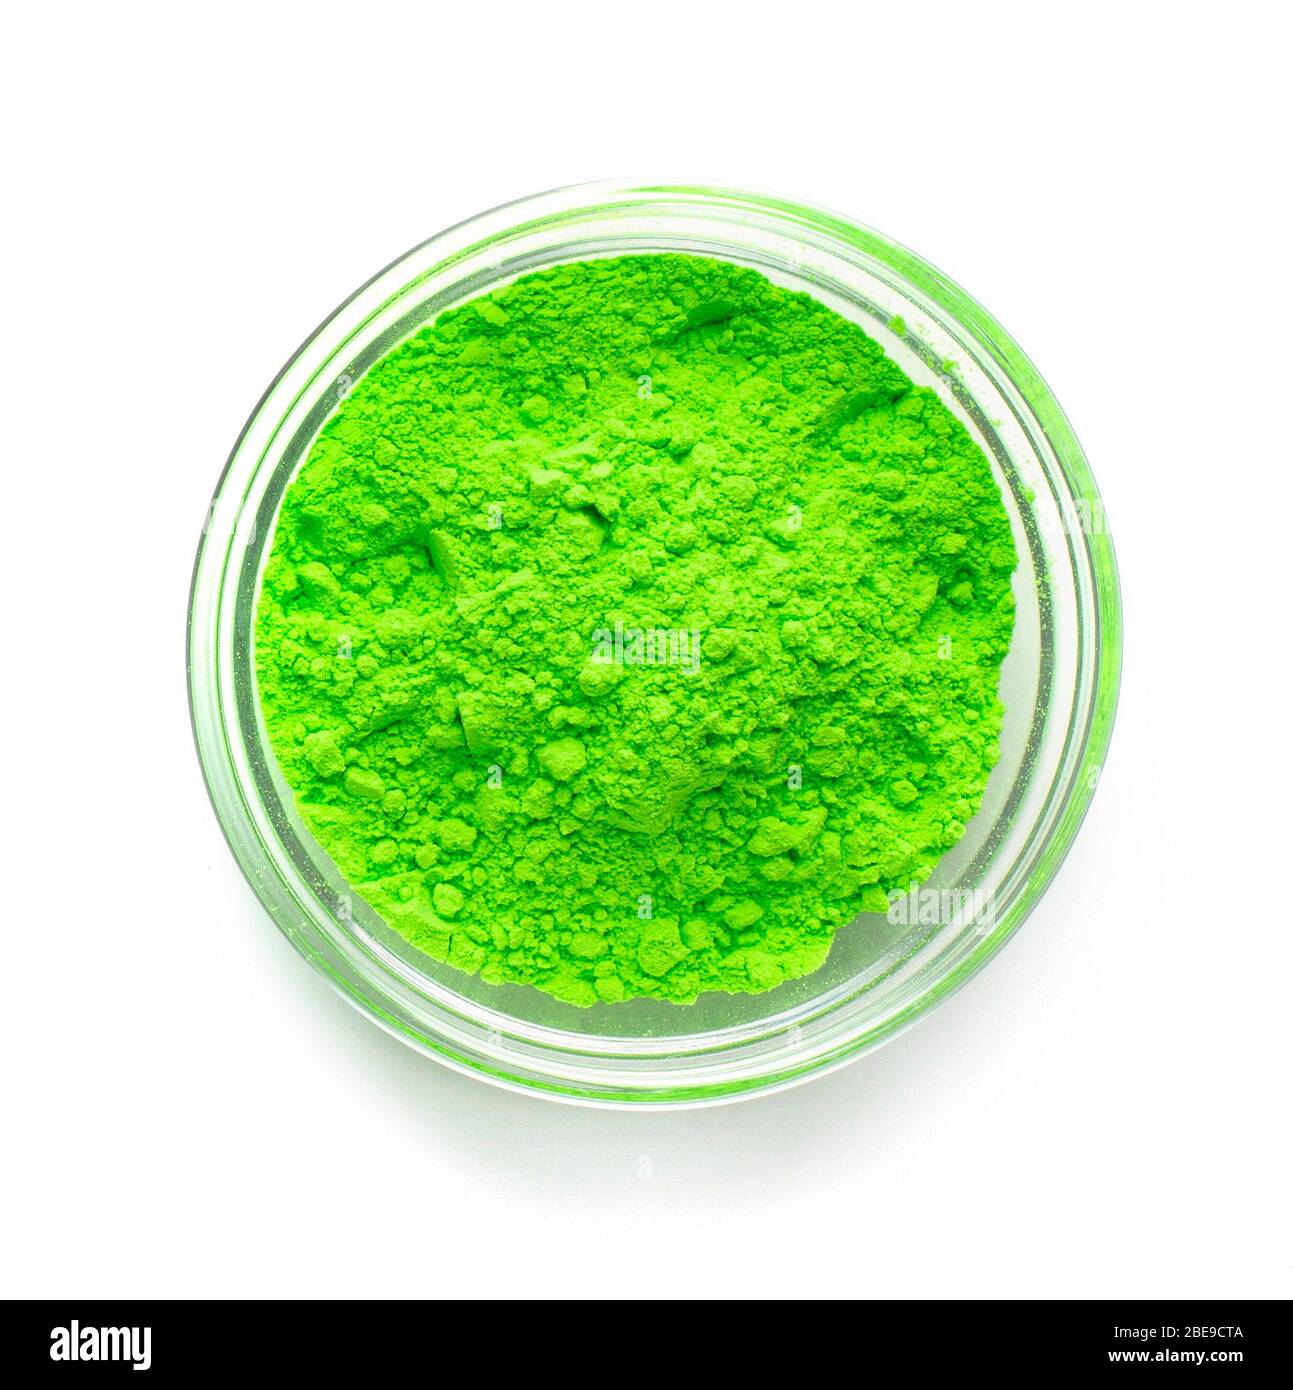 Vernice verde in polvere nella ciotola di vetro, primo piano Foto Stock